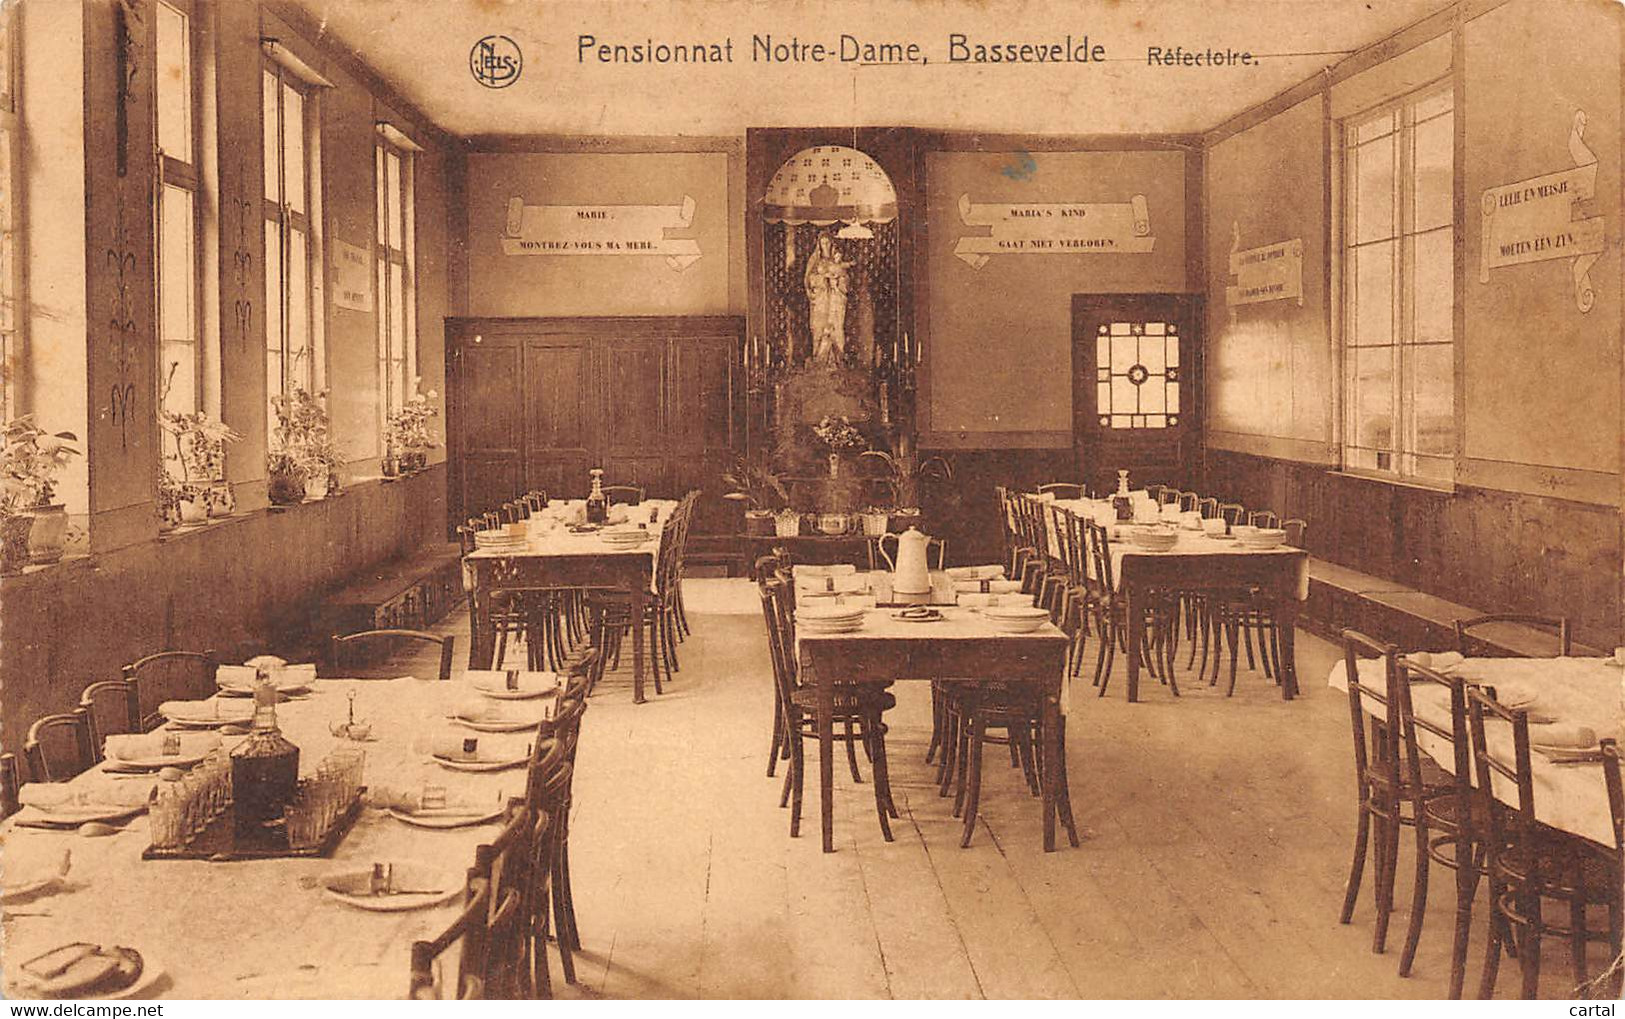 BASSEVELDE - Pensionnat Notre-Dame - Réfectoire. - Assenede